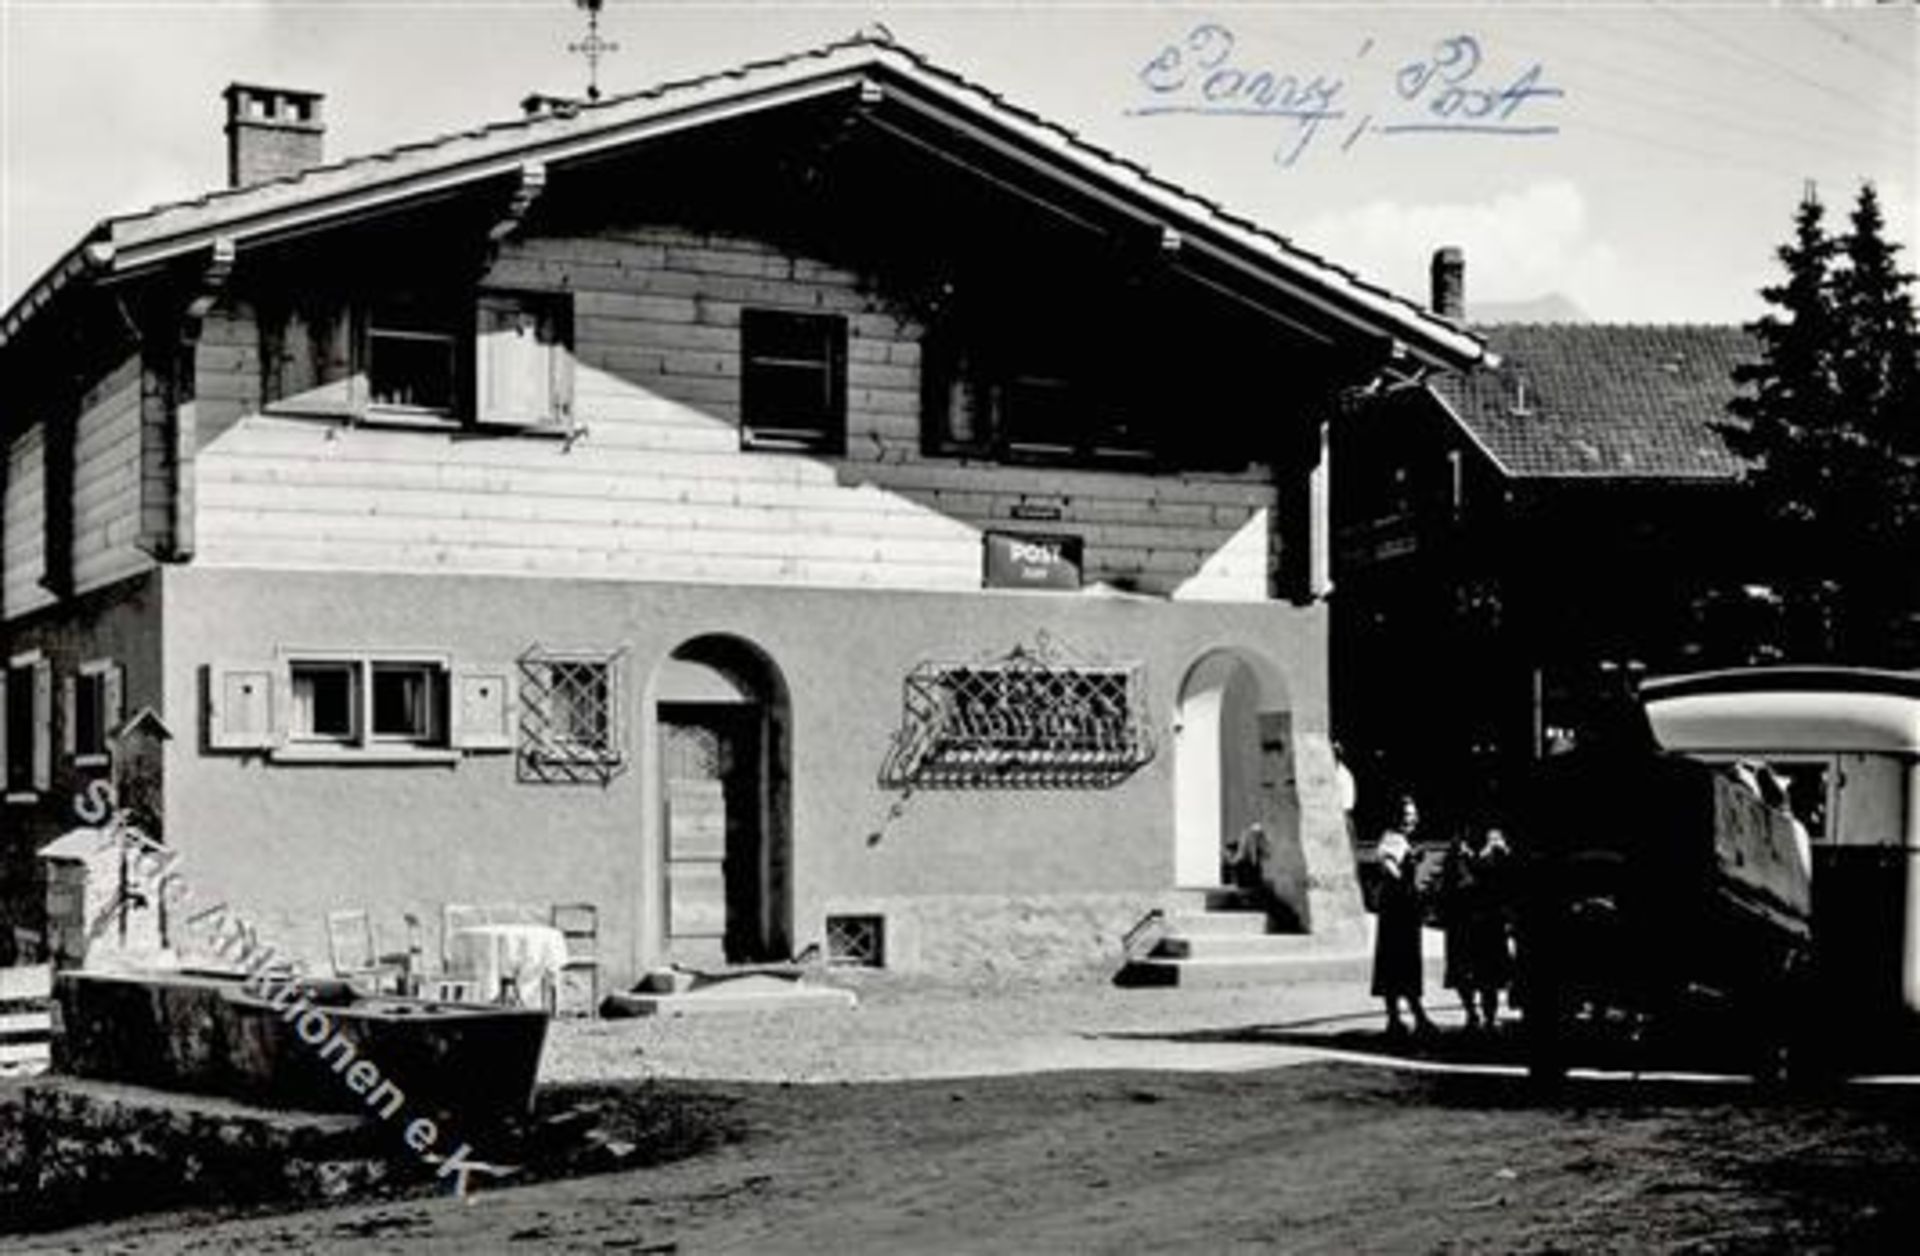 Pany (7243) Schweiz Postamt I-IIDieses Los wird in einer online-Auktion ohne Publikum angeboten.